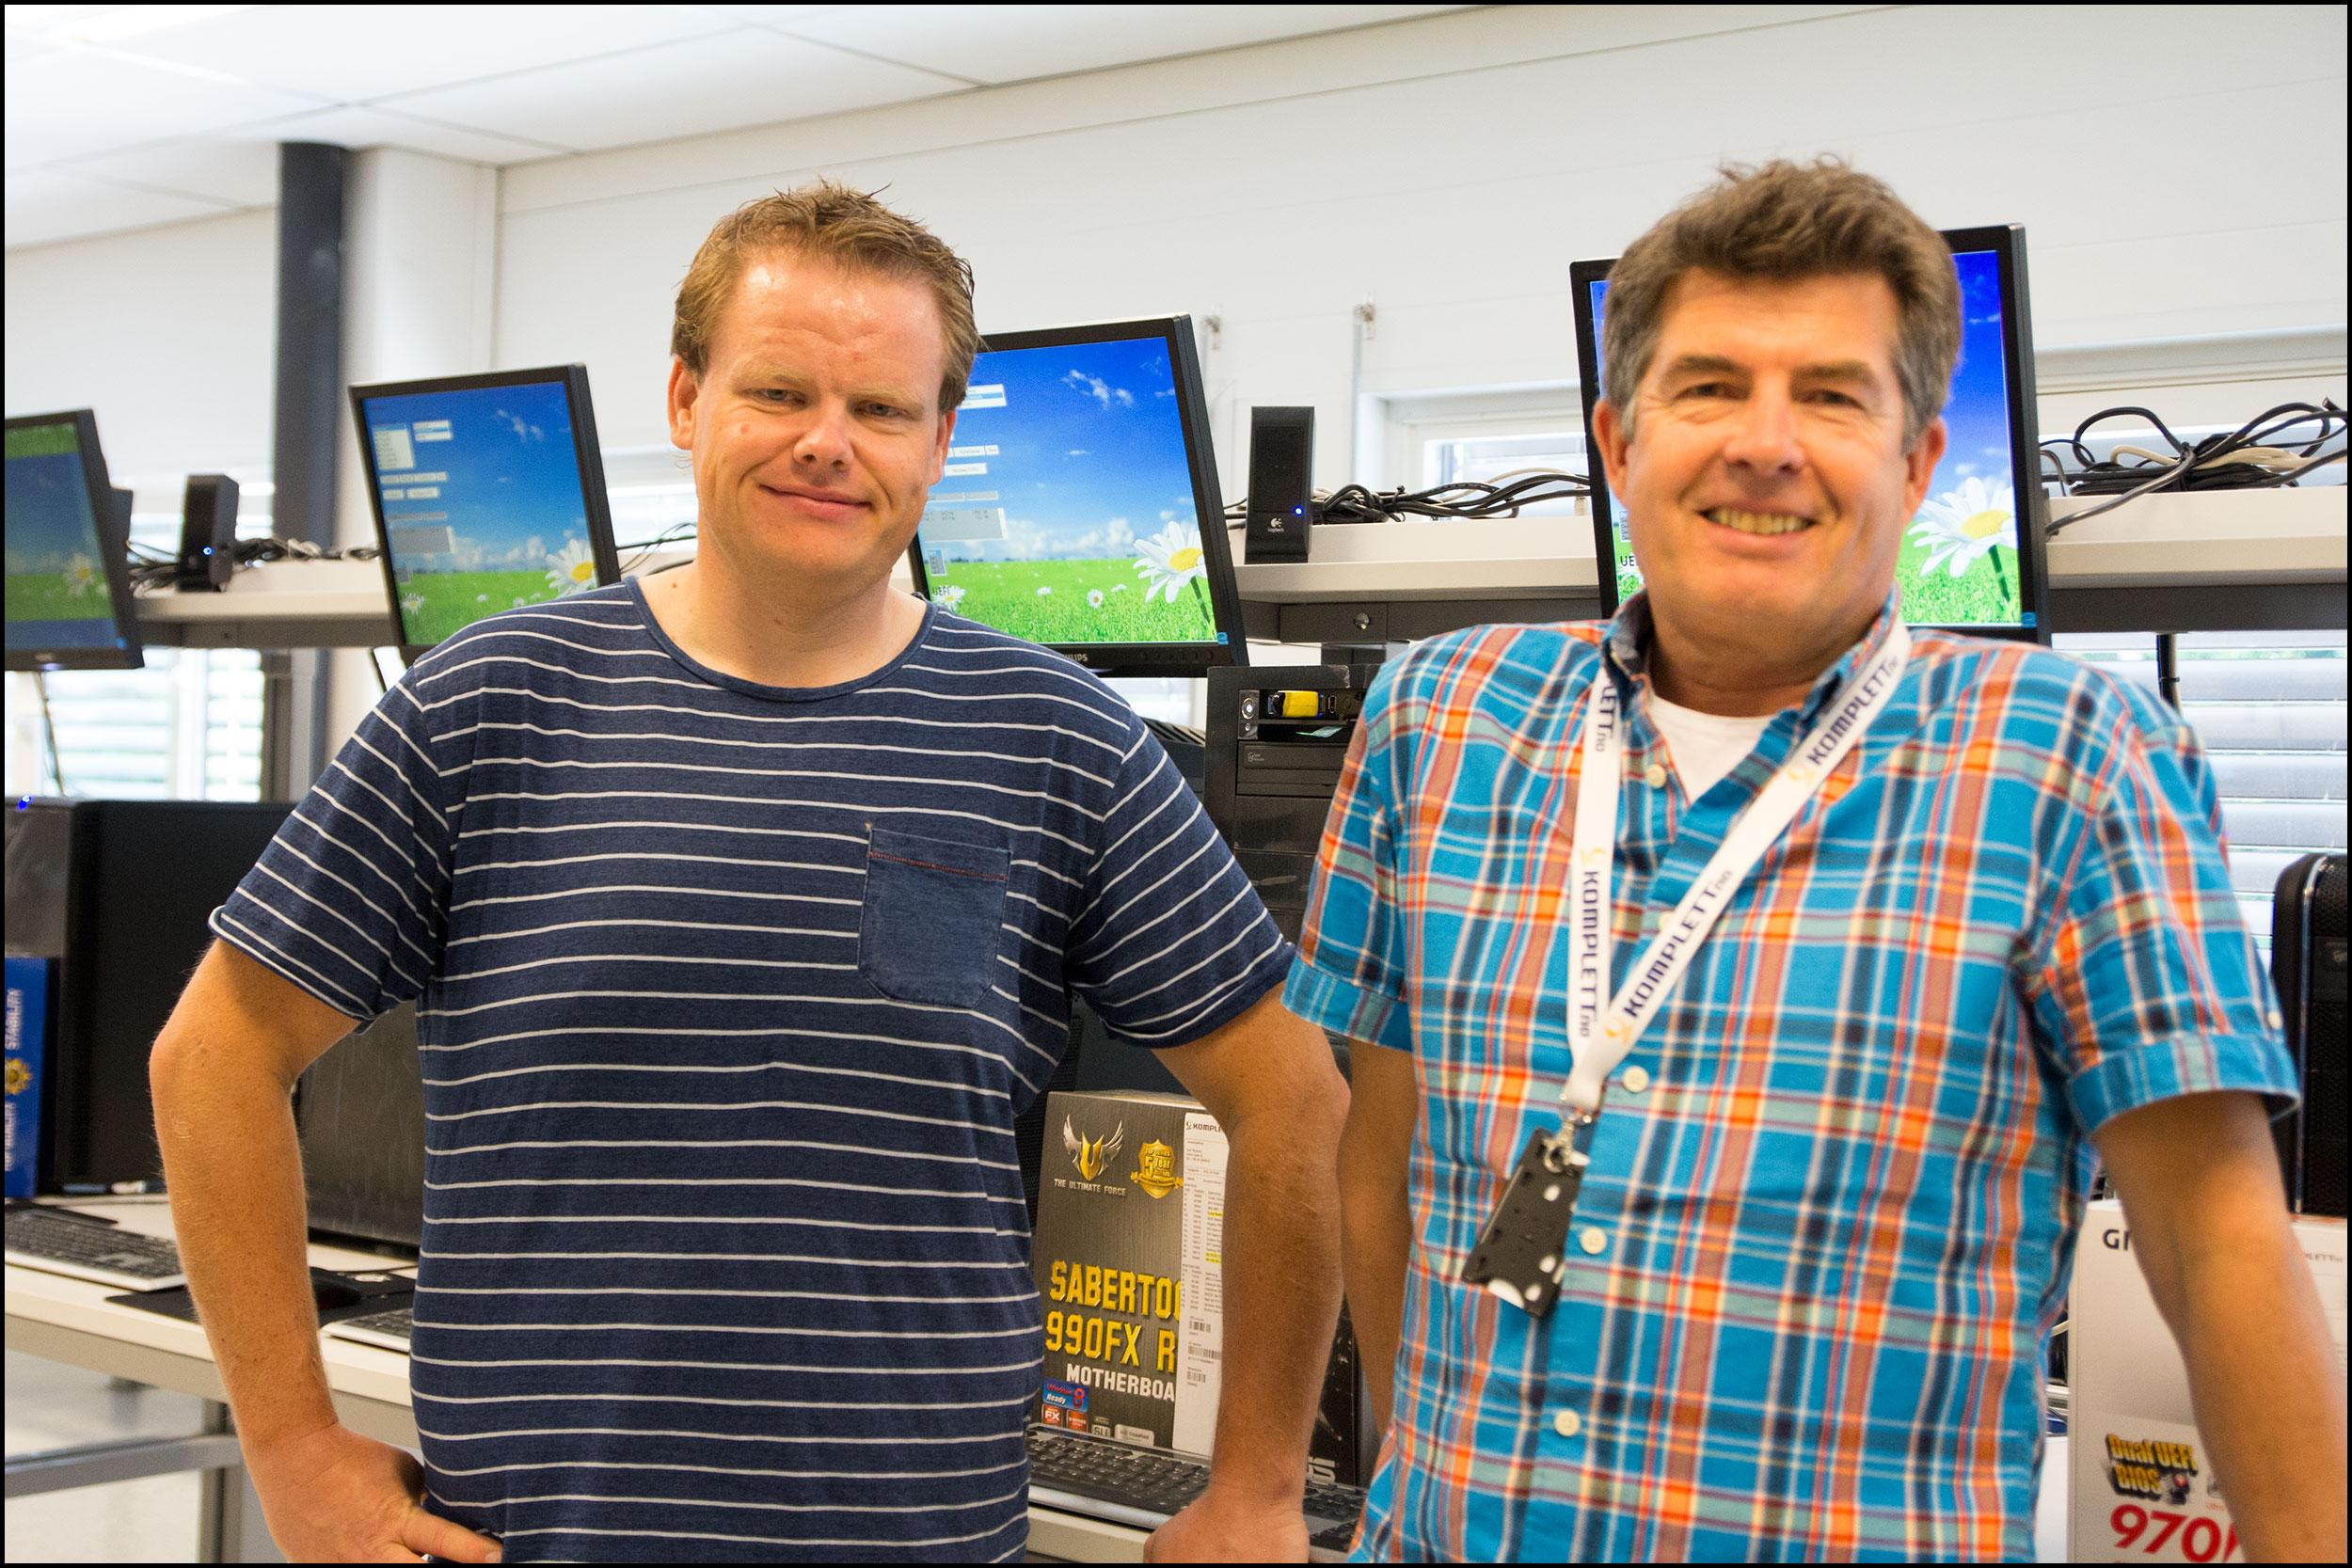 Pål Fredrik Berg, produktsjef for Komplett PC til venstre. Ole Soleng, produksjonssjef i Komplett til høyre. Foto: Jørgen Elton Nilsen, Hardware.no